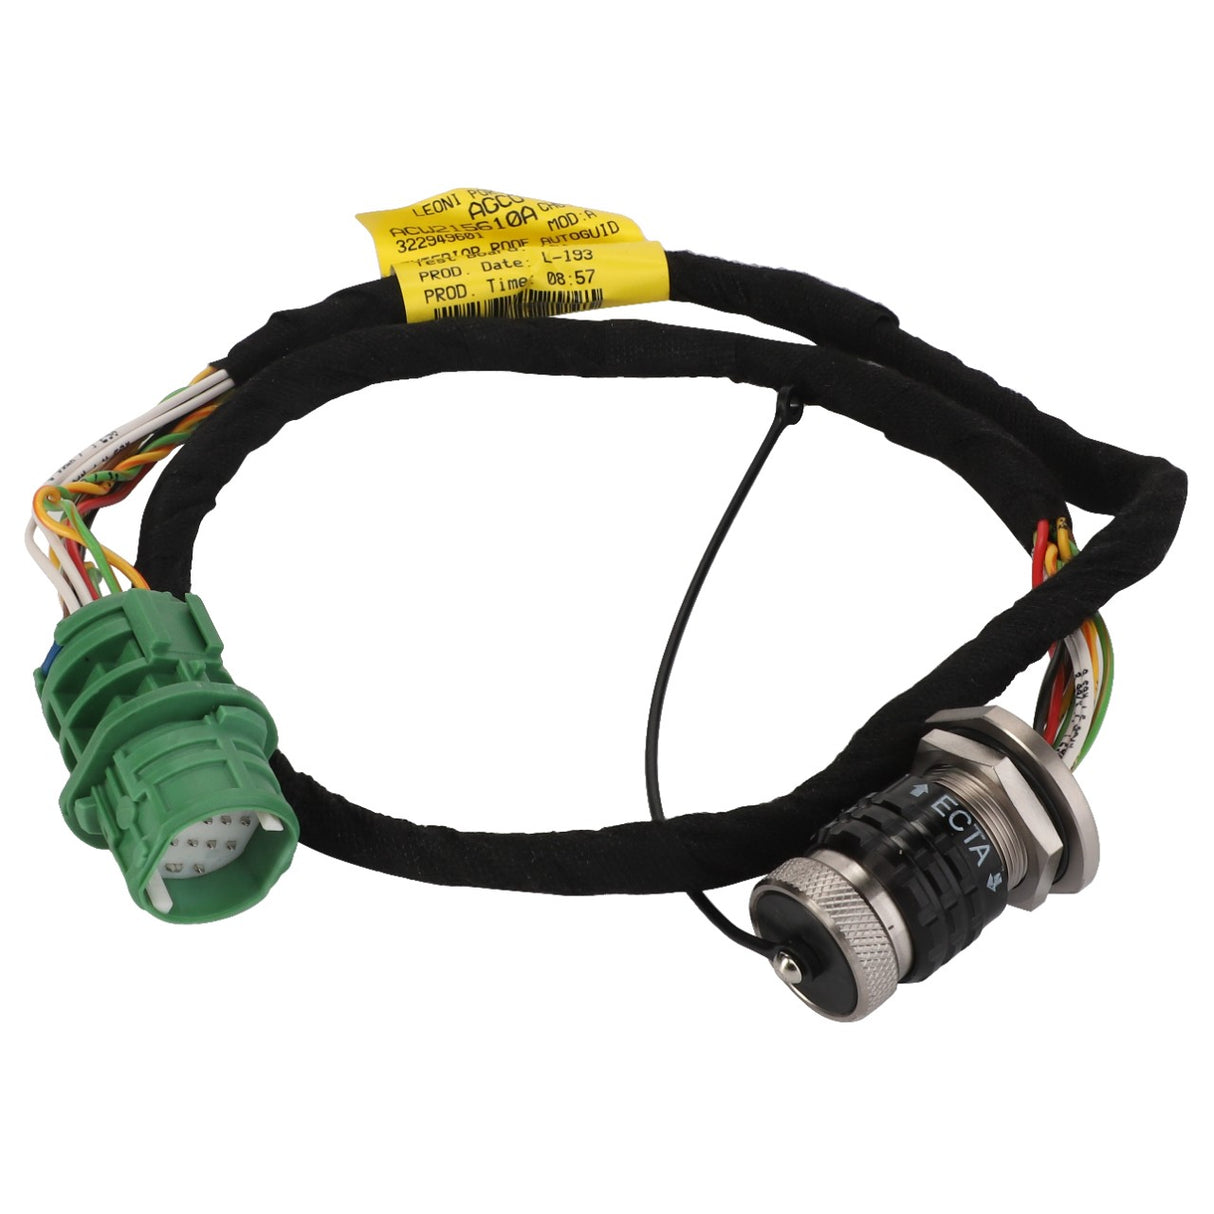 AGCO | Auto-Guide Wire Harness - Acw215610A - Farming Parts